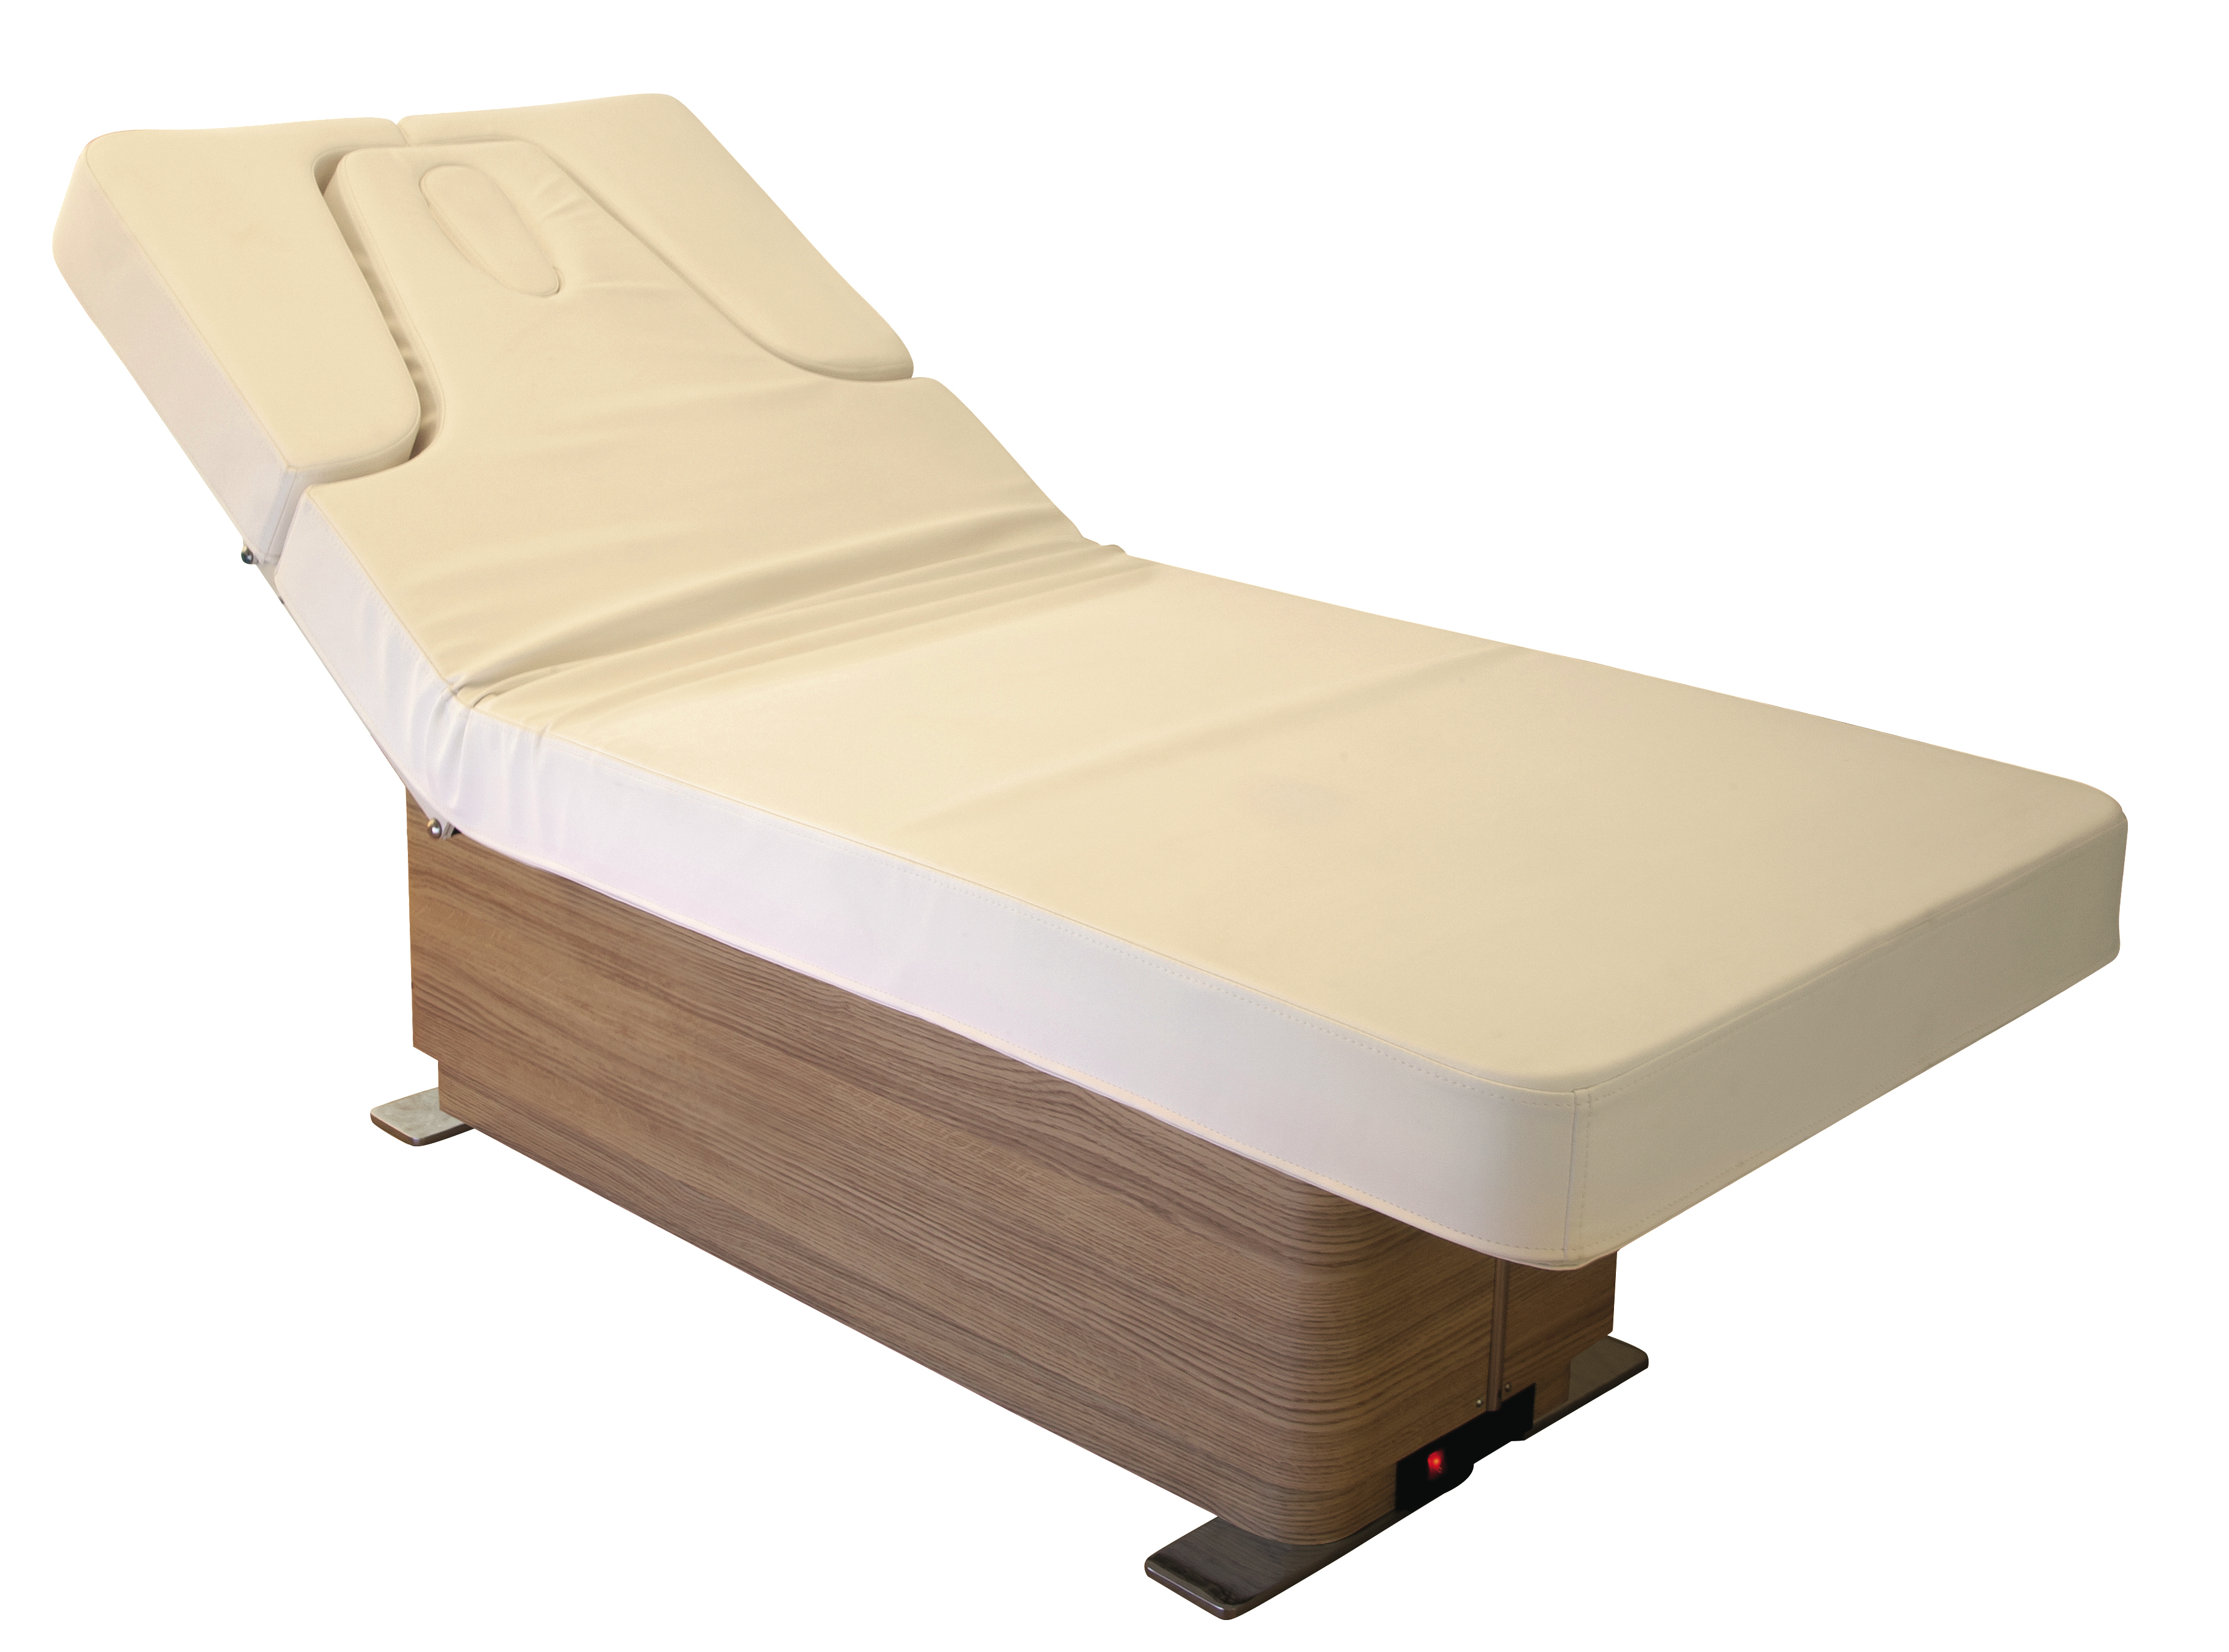 The Nilo Omnia Treatment Bed